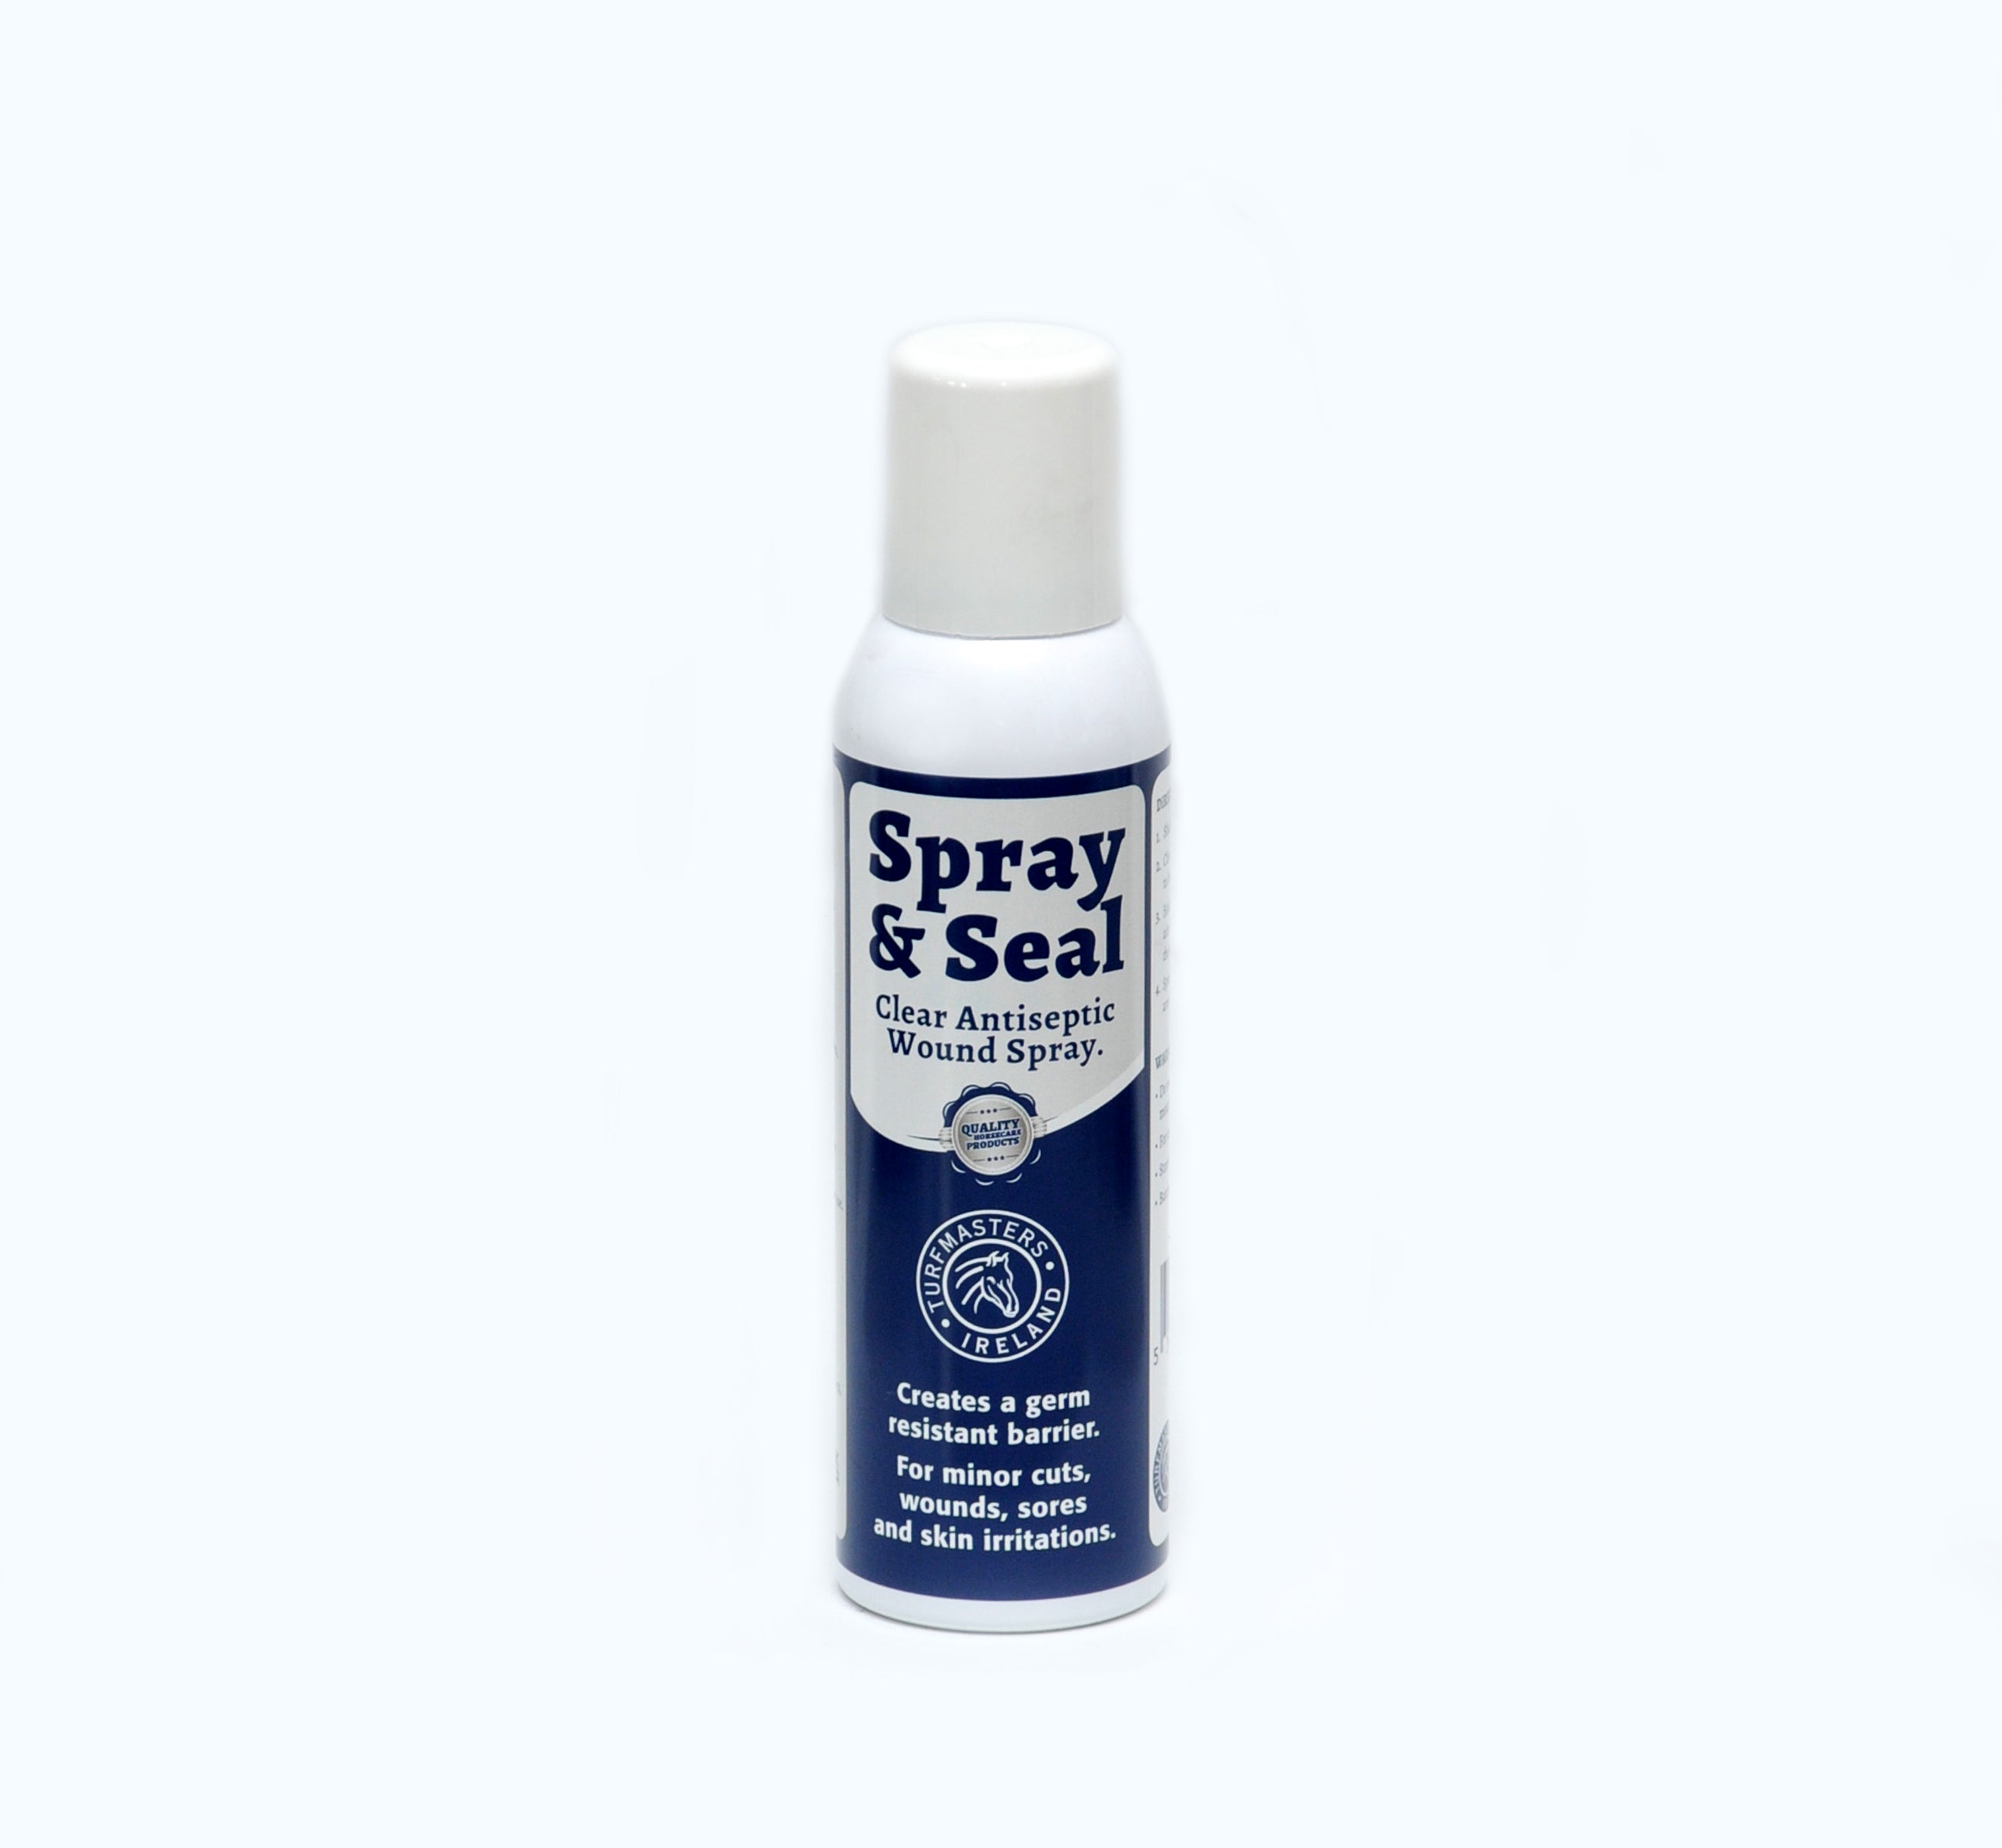 Turfmasters Spray & Seal Wound Spray 200ml